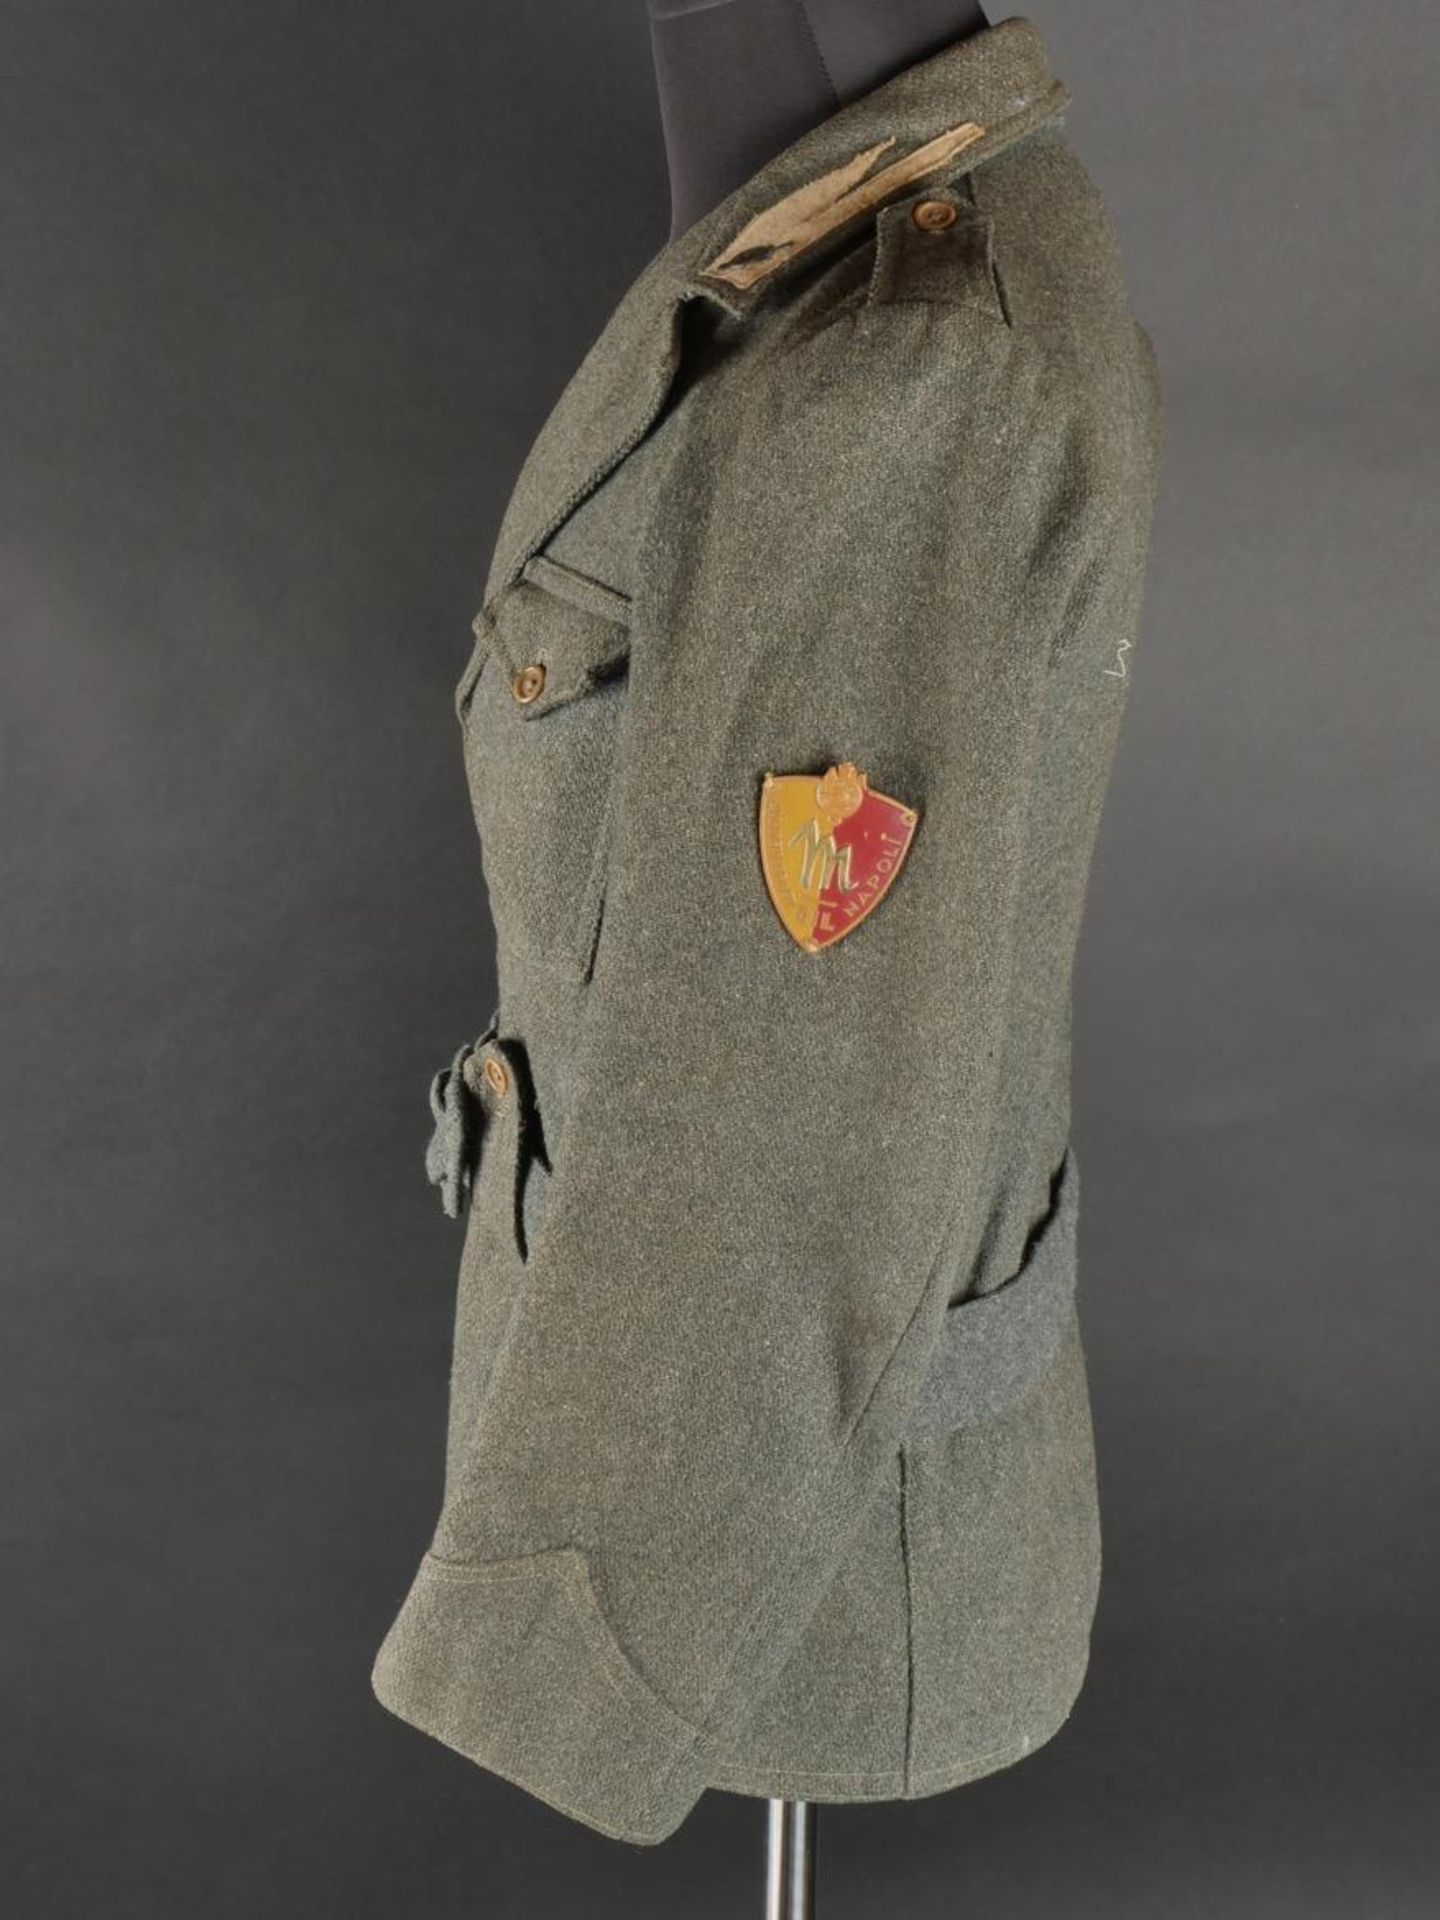 Vareuse des GIL de Giovanni Dorio. GIL jacket by Giovanni Dorio. - Image 10 of 19